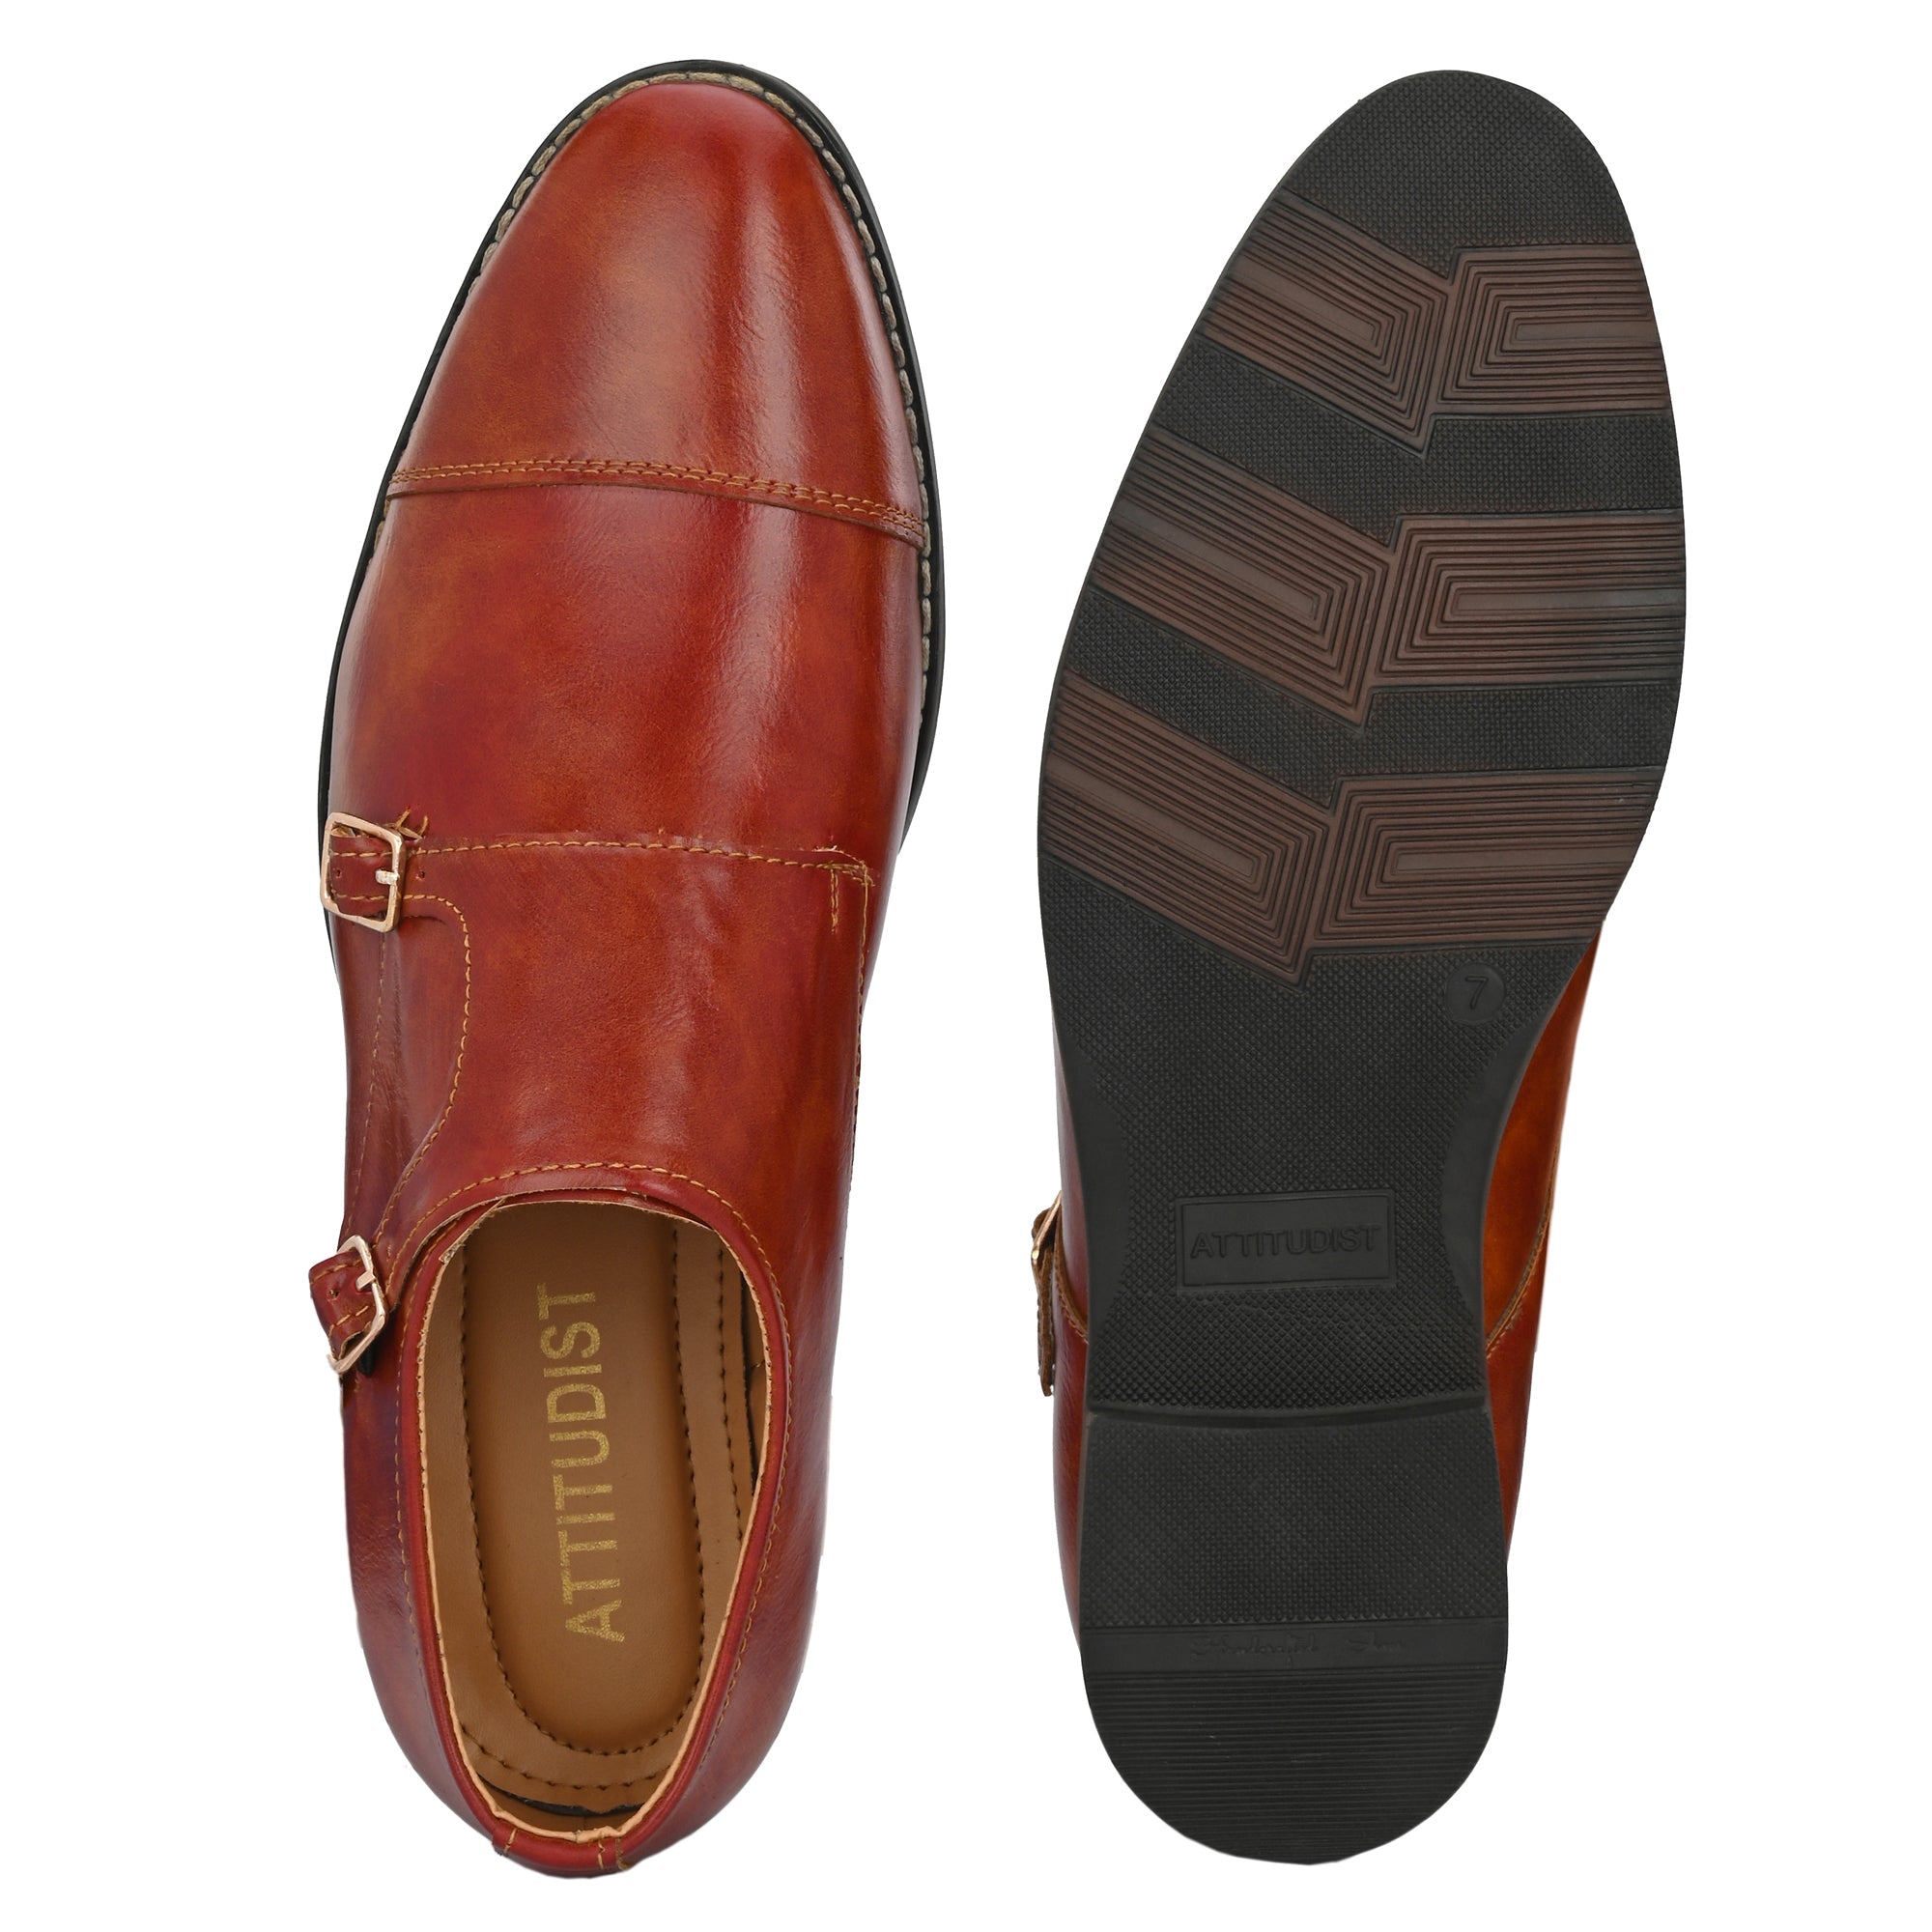 tan-double-monk-strap-attitudist-shoes-for-men-with-buckle-sp4c